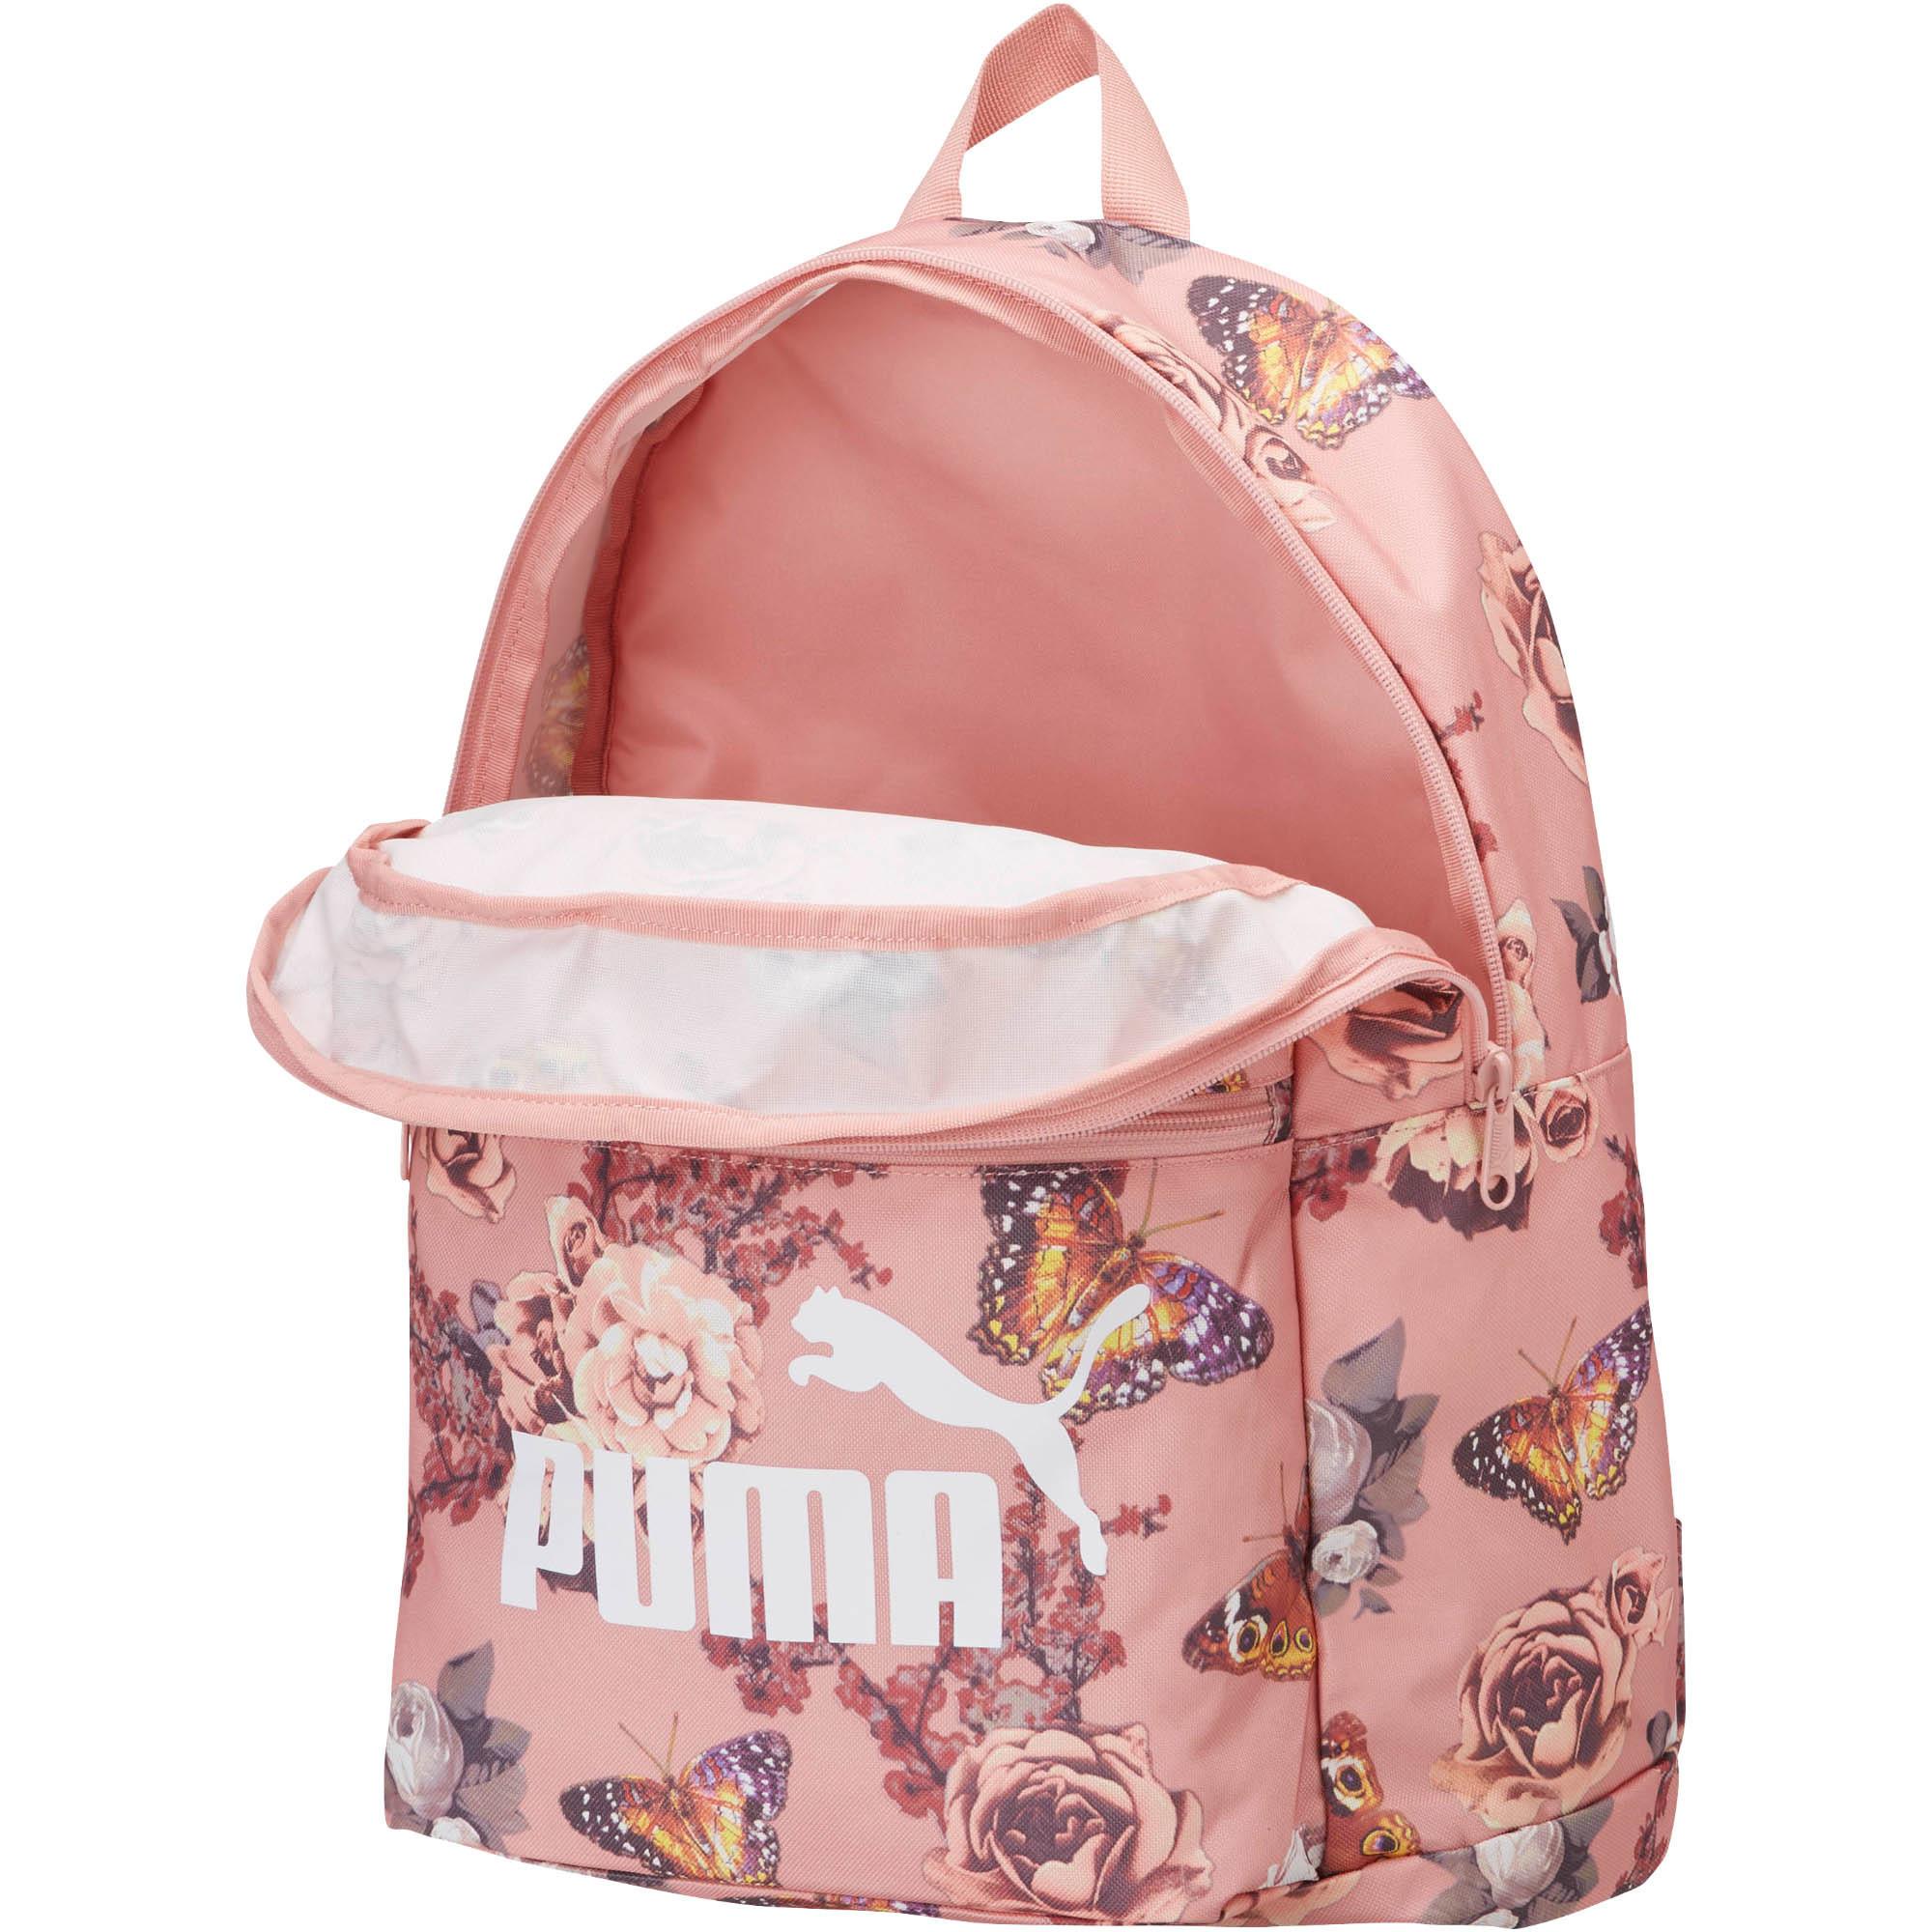 puma big cat backpack pink